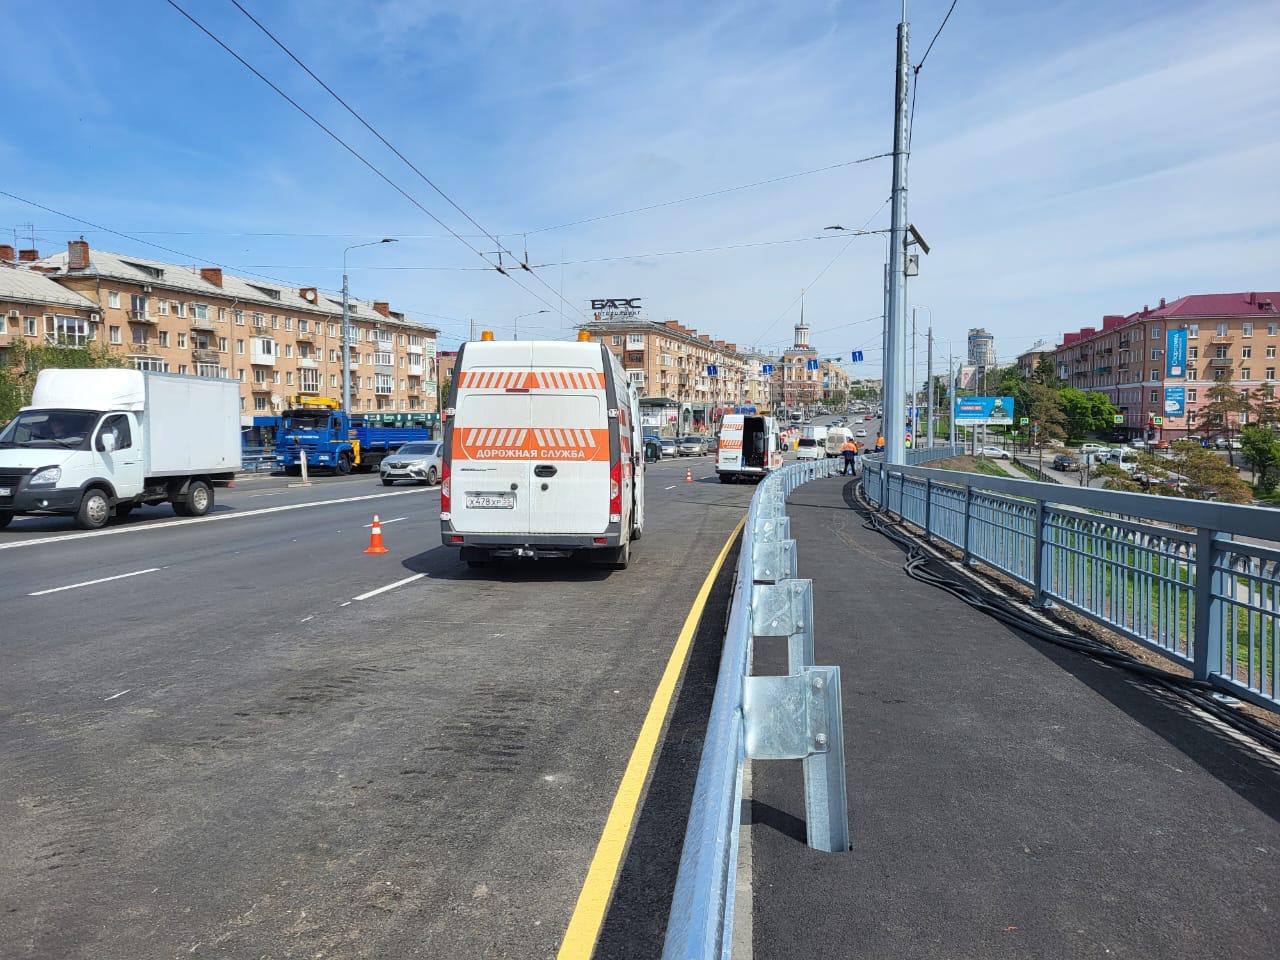 В Омске на Ленинградском мосту запретили ездить по крайним правым полосам (схема)